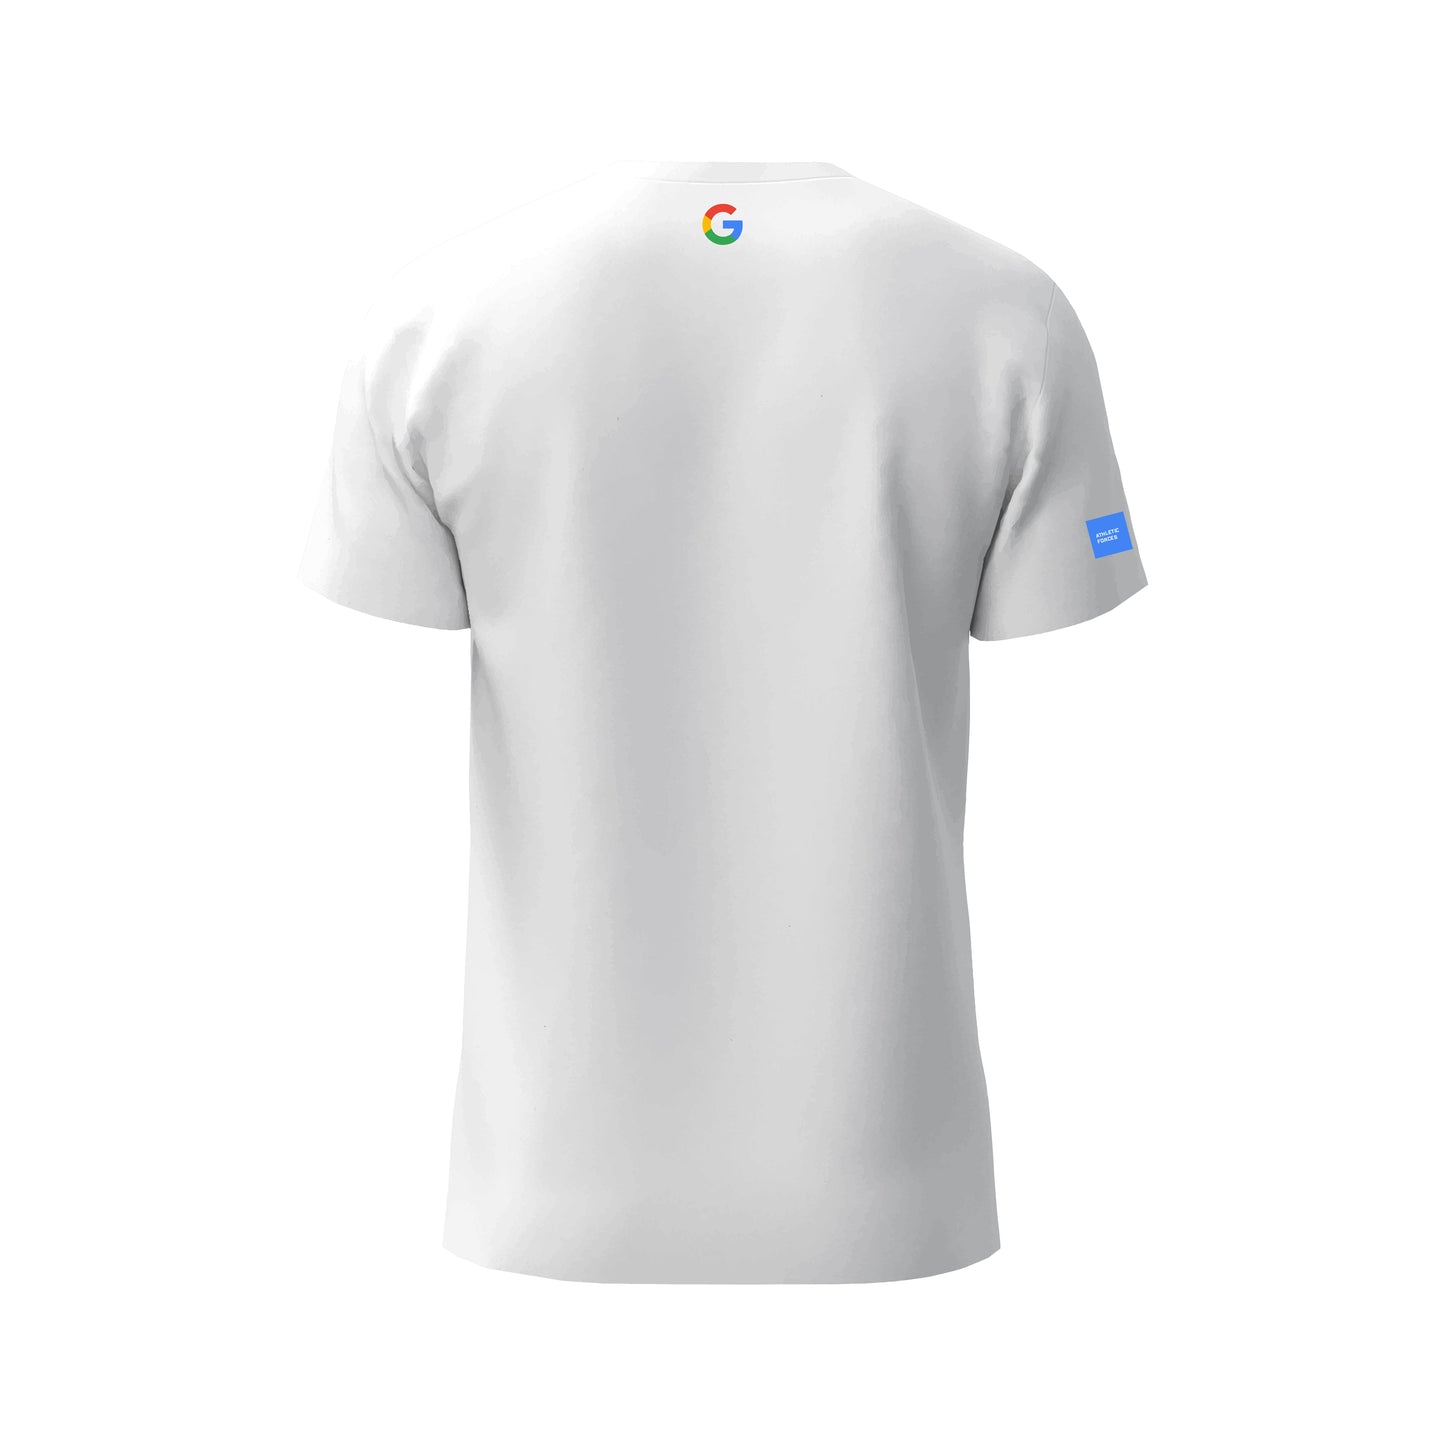 Google - T-Shirt Marine Force ® par Athletic Forces - Modèle 1